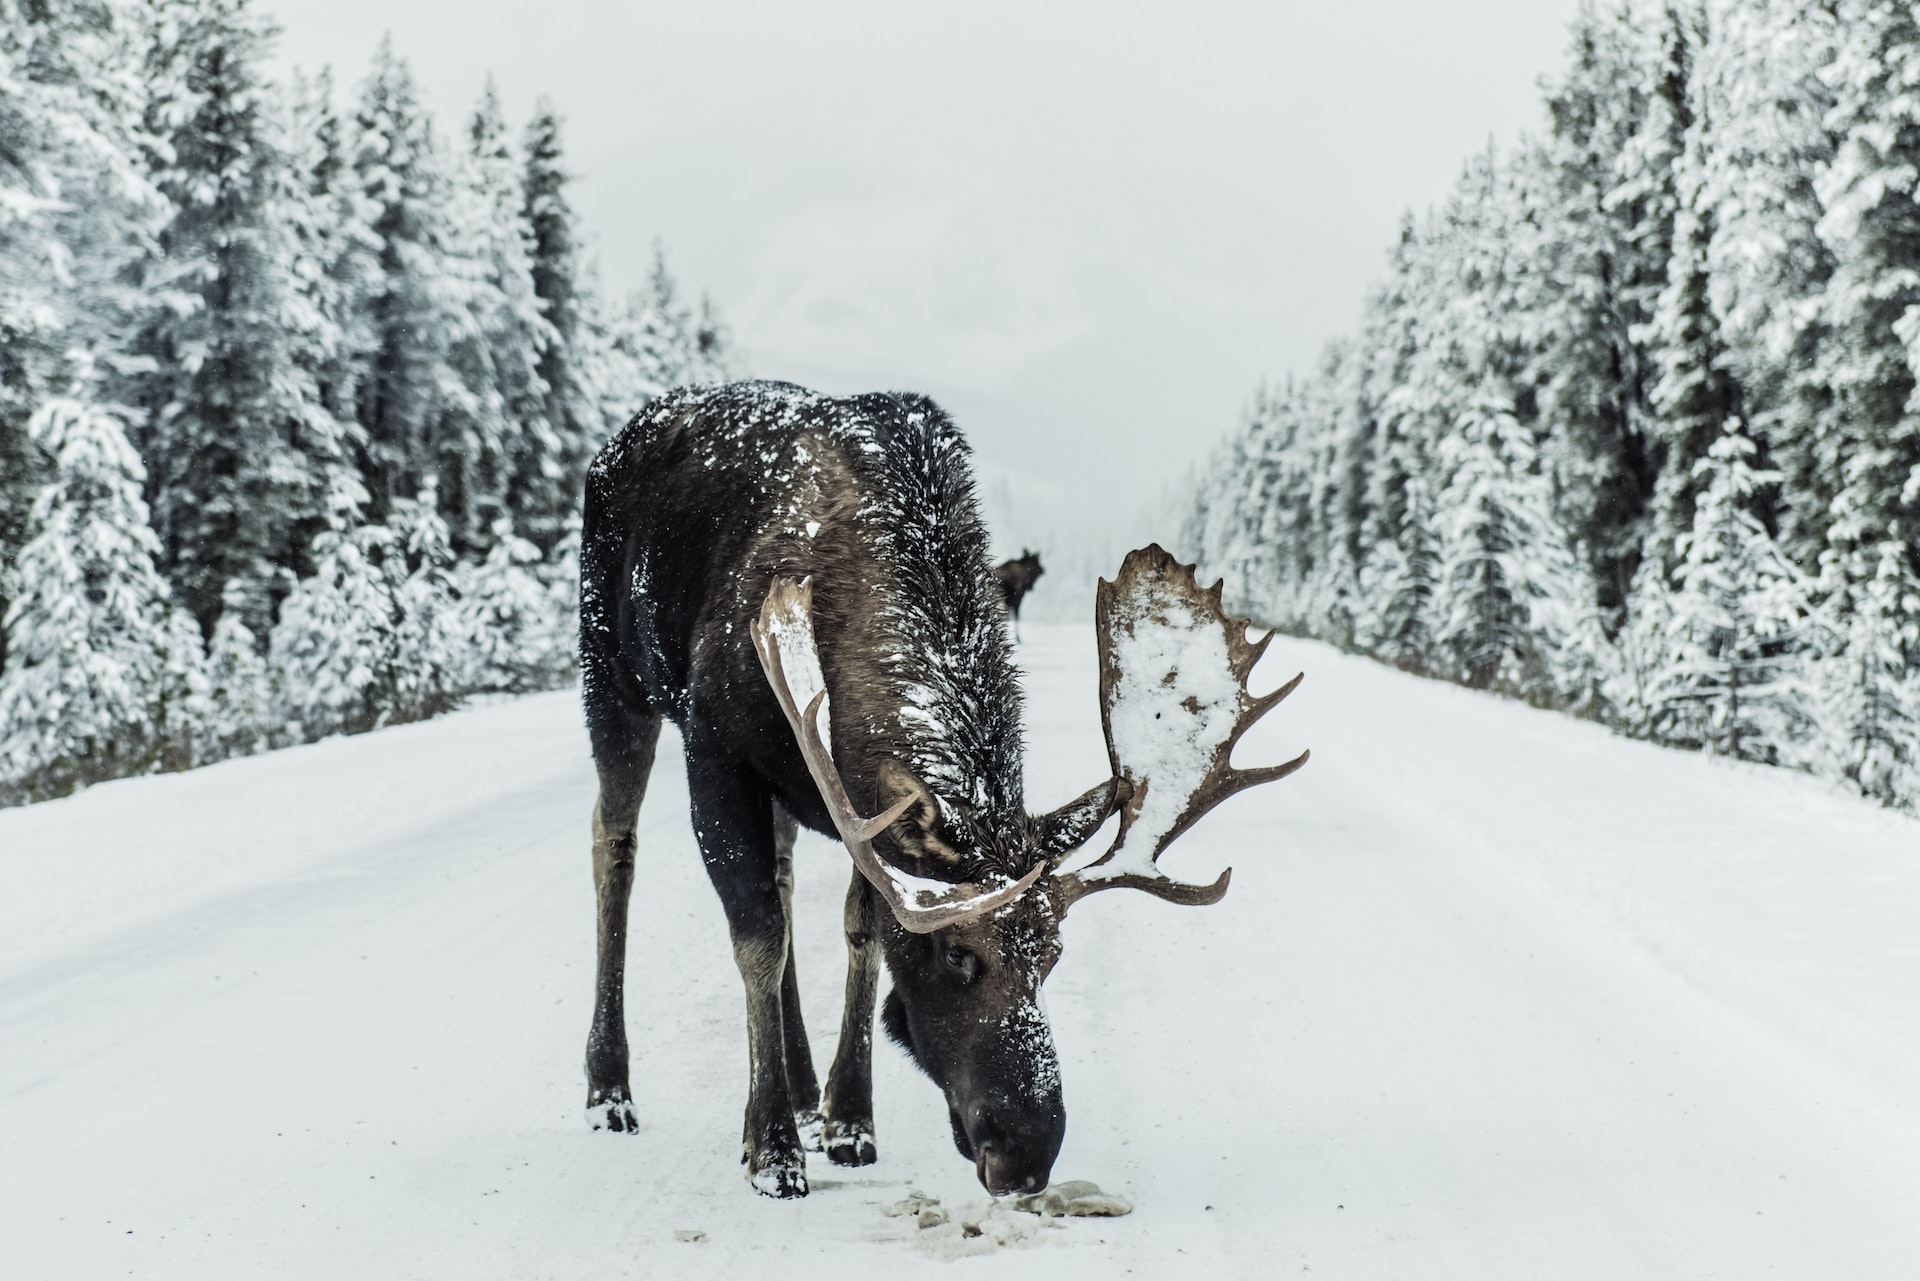 Снег стал причиной частых дорожных происшествий с лосями в Северной Америке